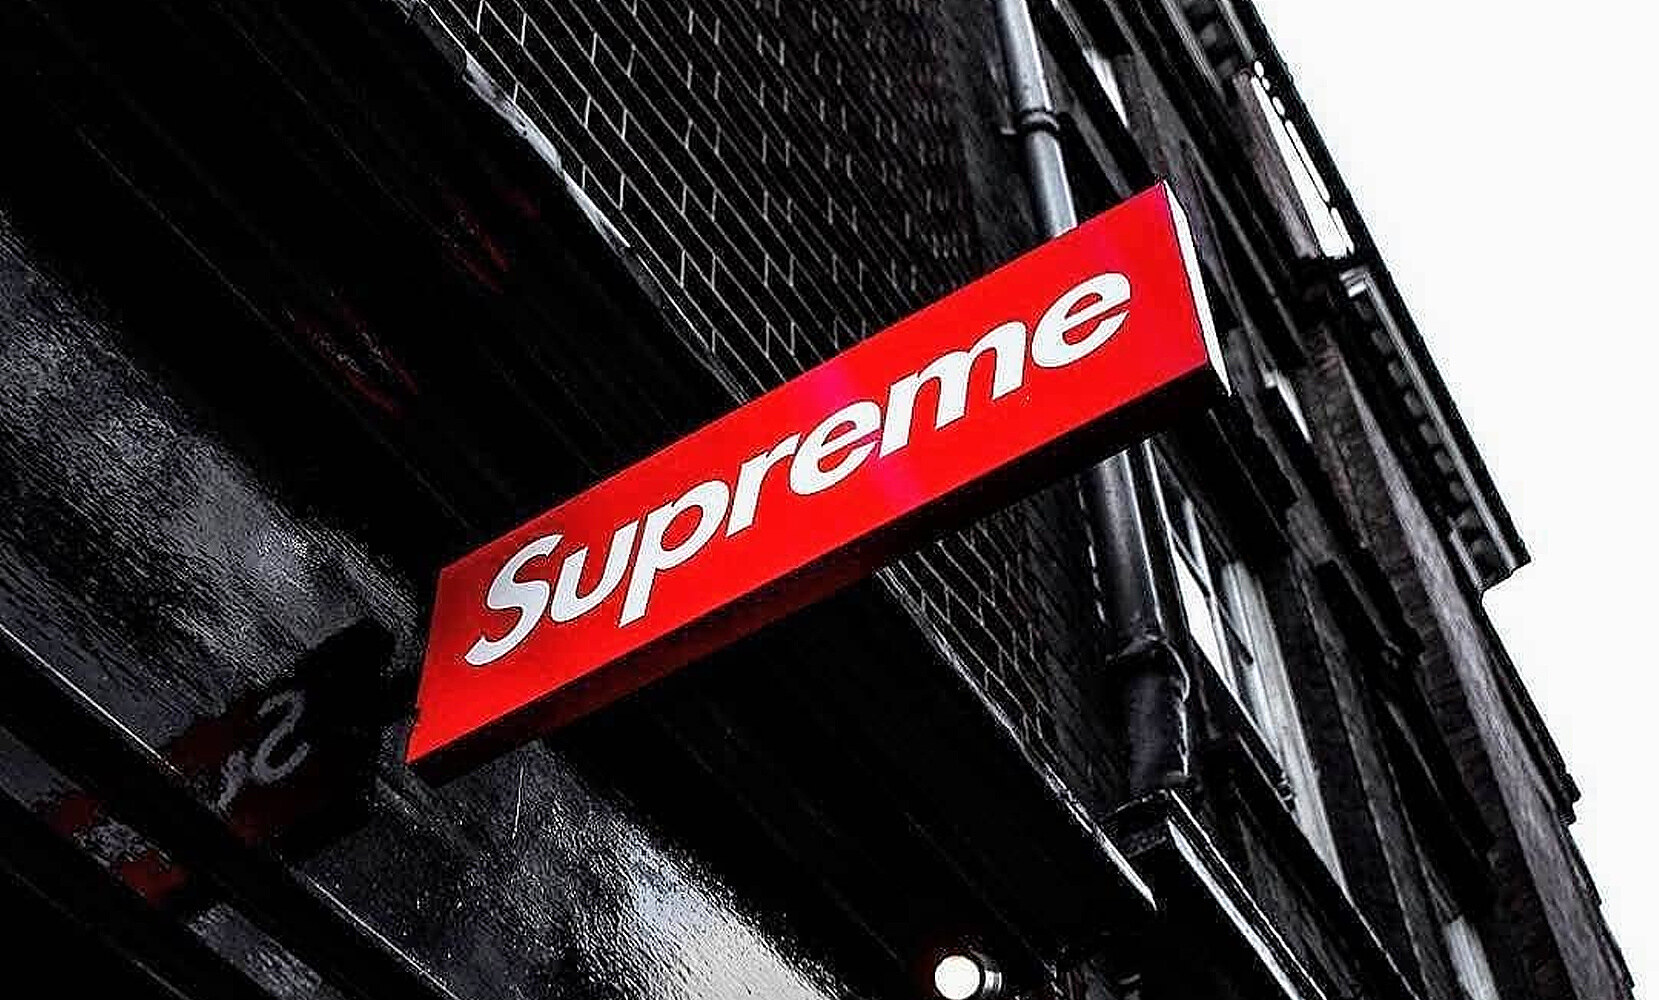 Supreme store sign